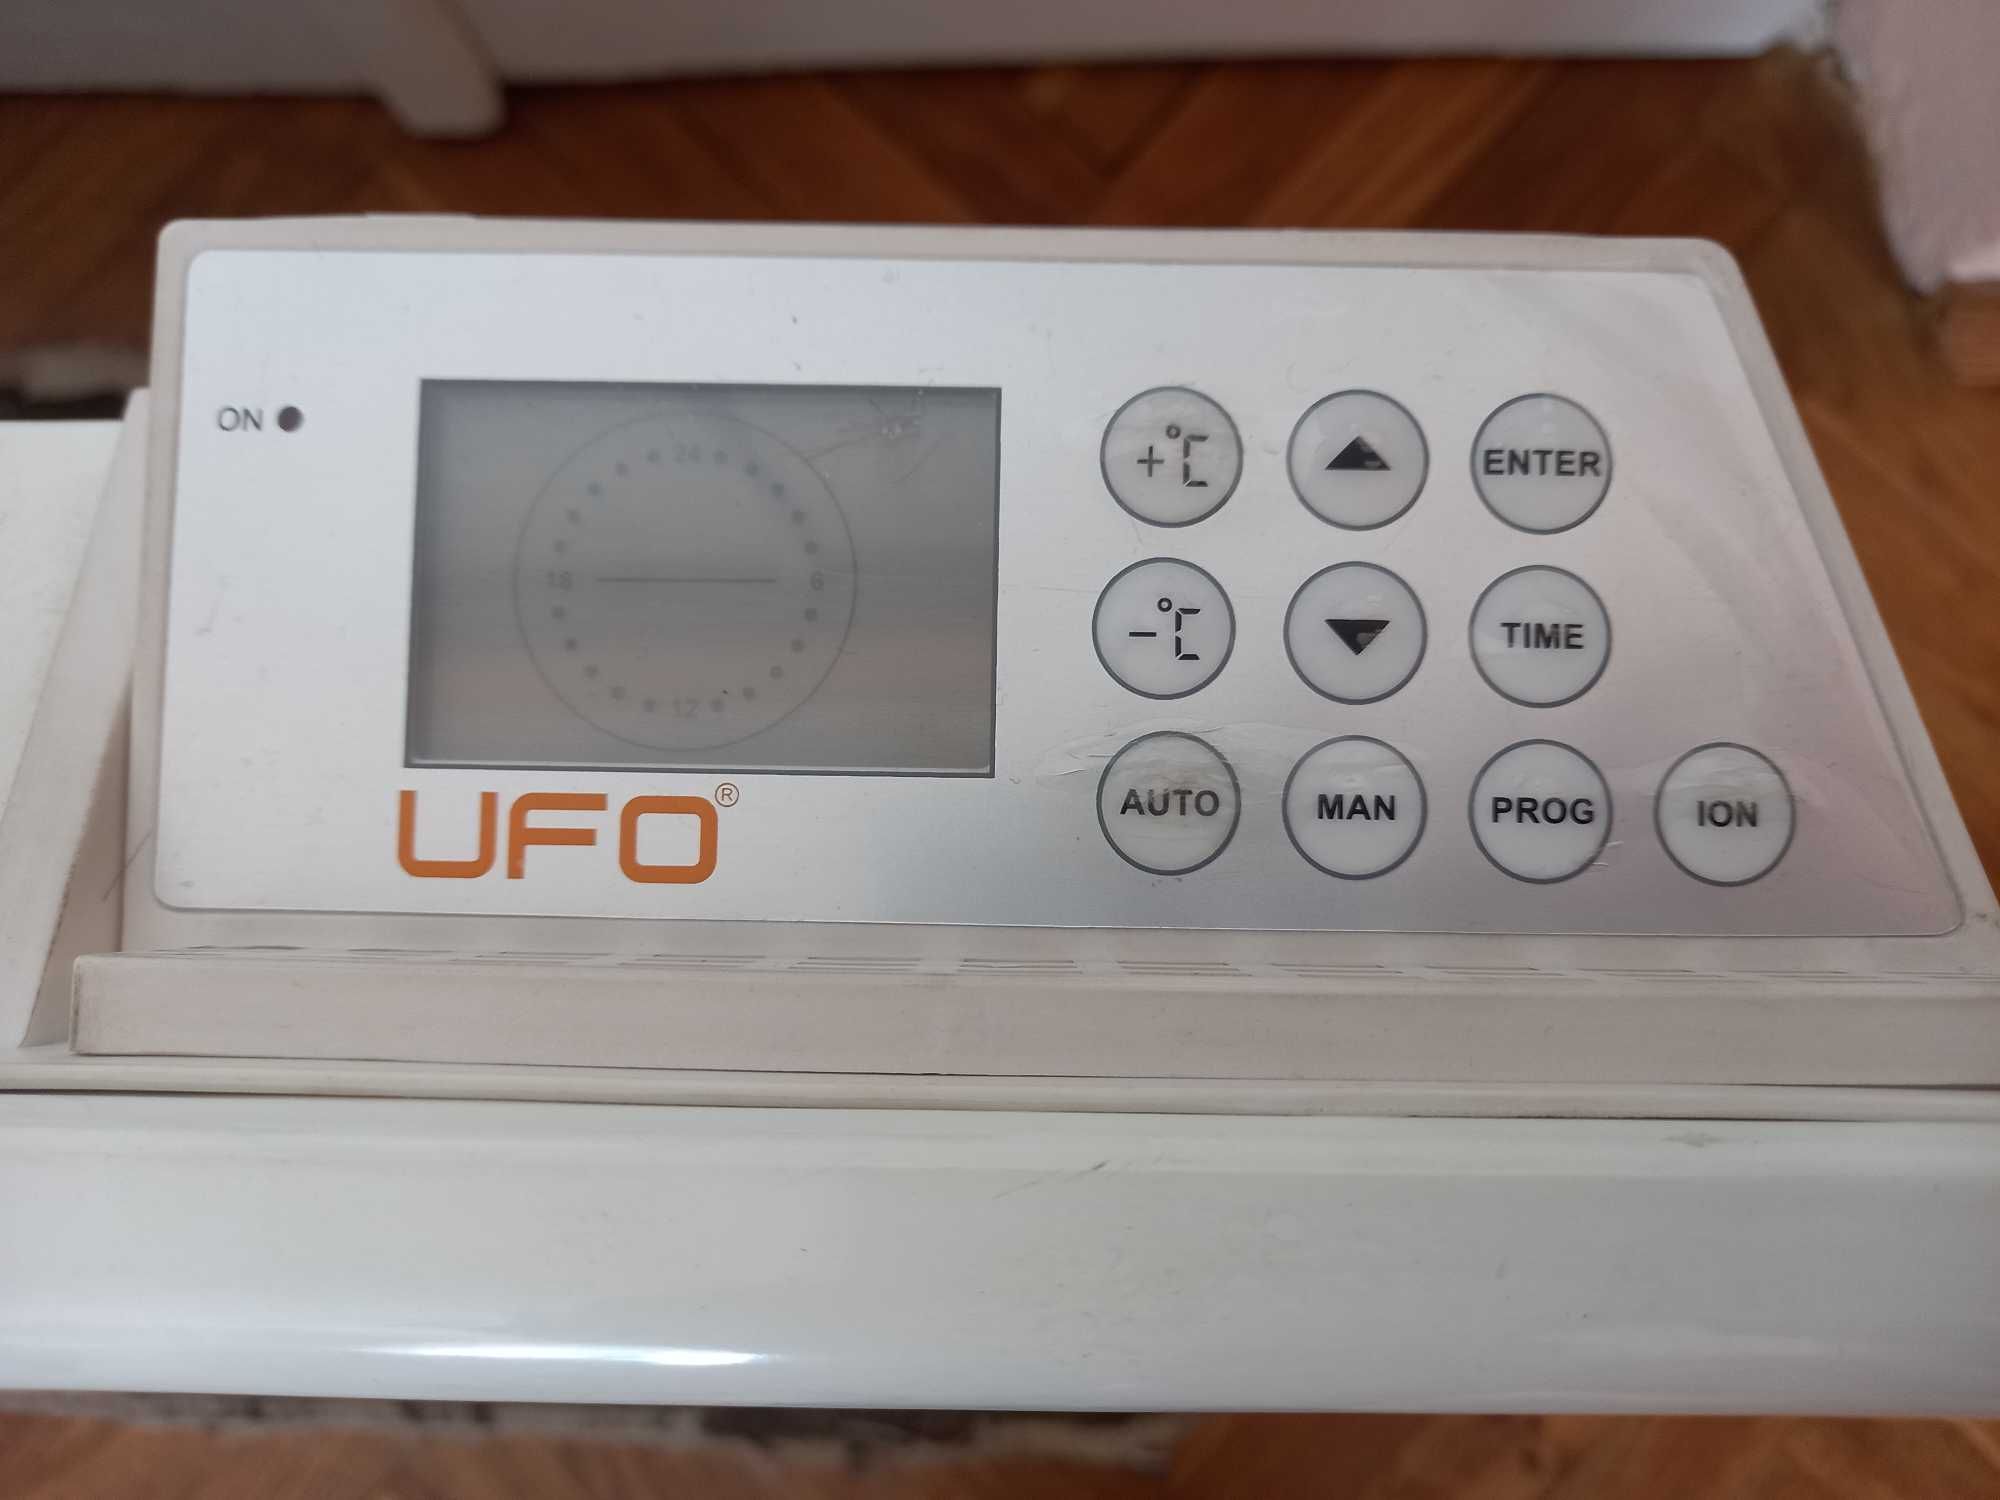 Електричний конвектор з іонізатором UFO-ECH/20 2000 В